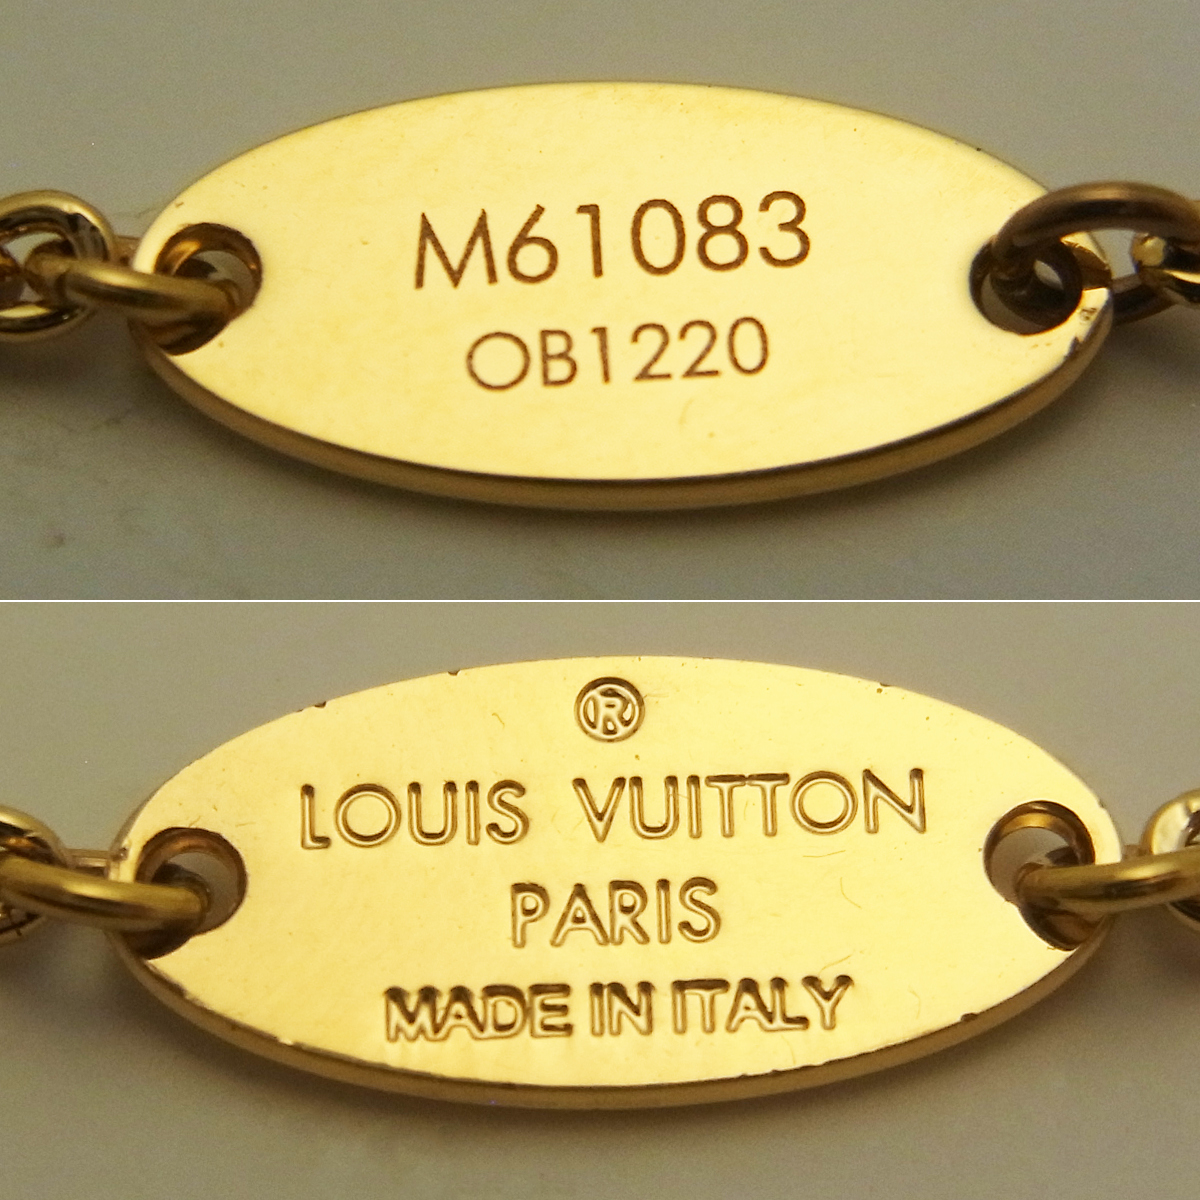 ルイヴィトン(Louis Vuitton) ネックレス・エセンシャル V M61083 箱